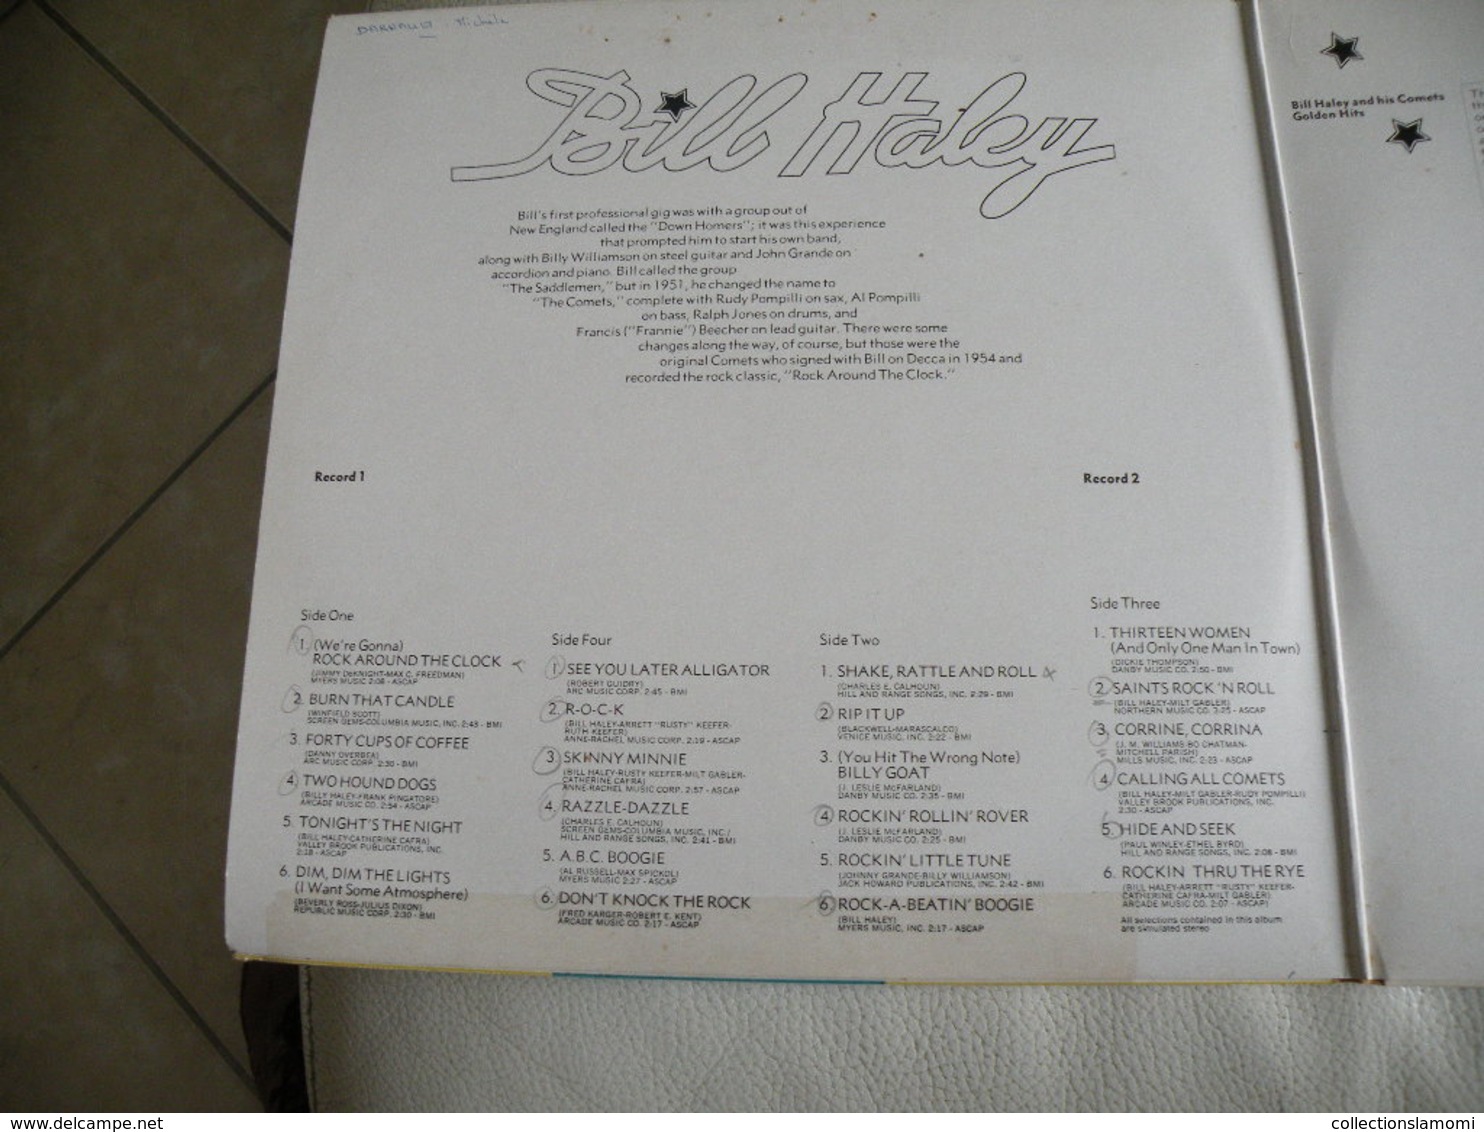 Bill Haley -1973 (Titres sur photos) - Vinyle 33 T LP double album